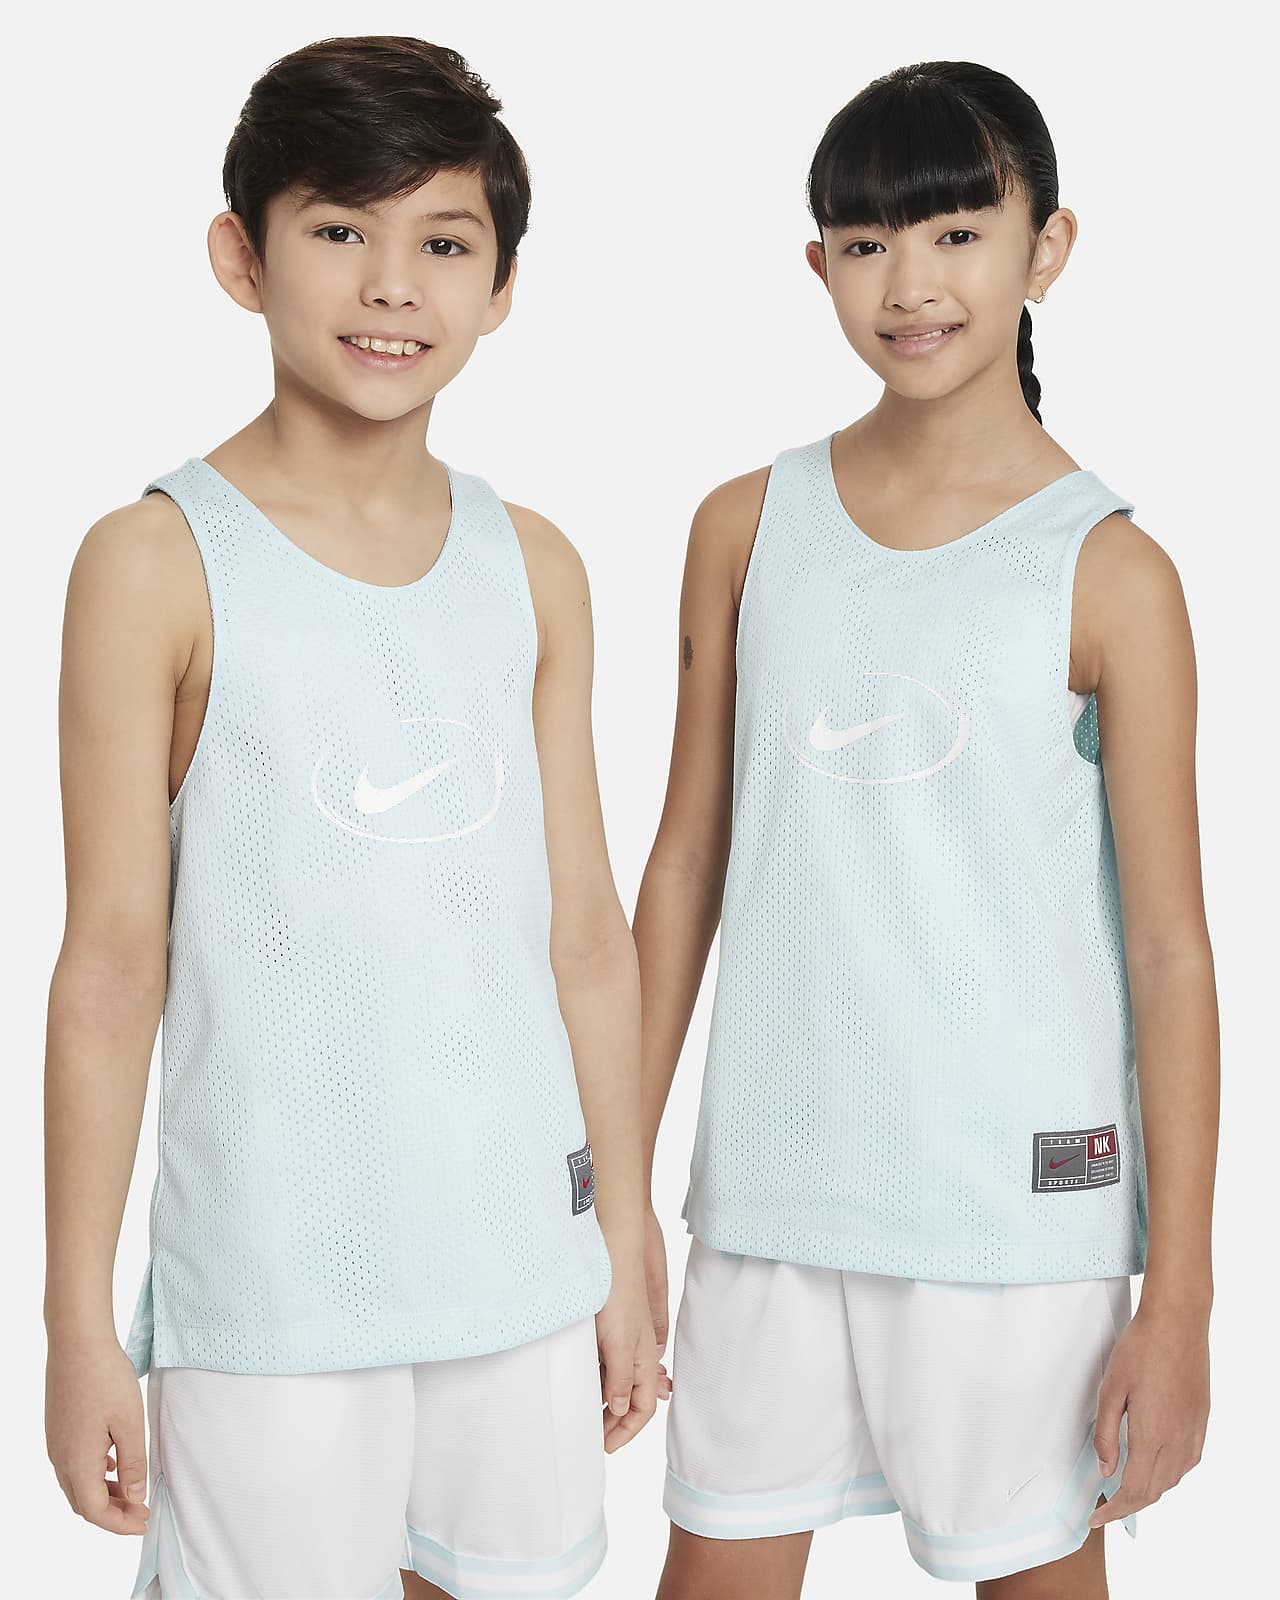 Nike Culture of Basketball Çift Taraflı Genç Çocuk Forması